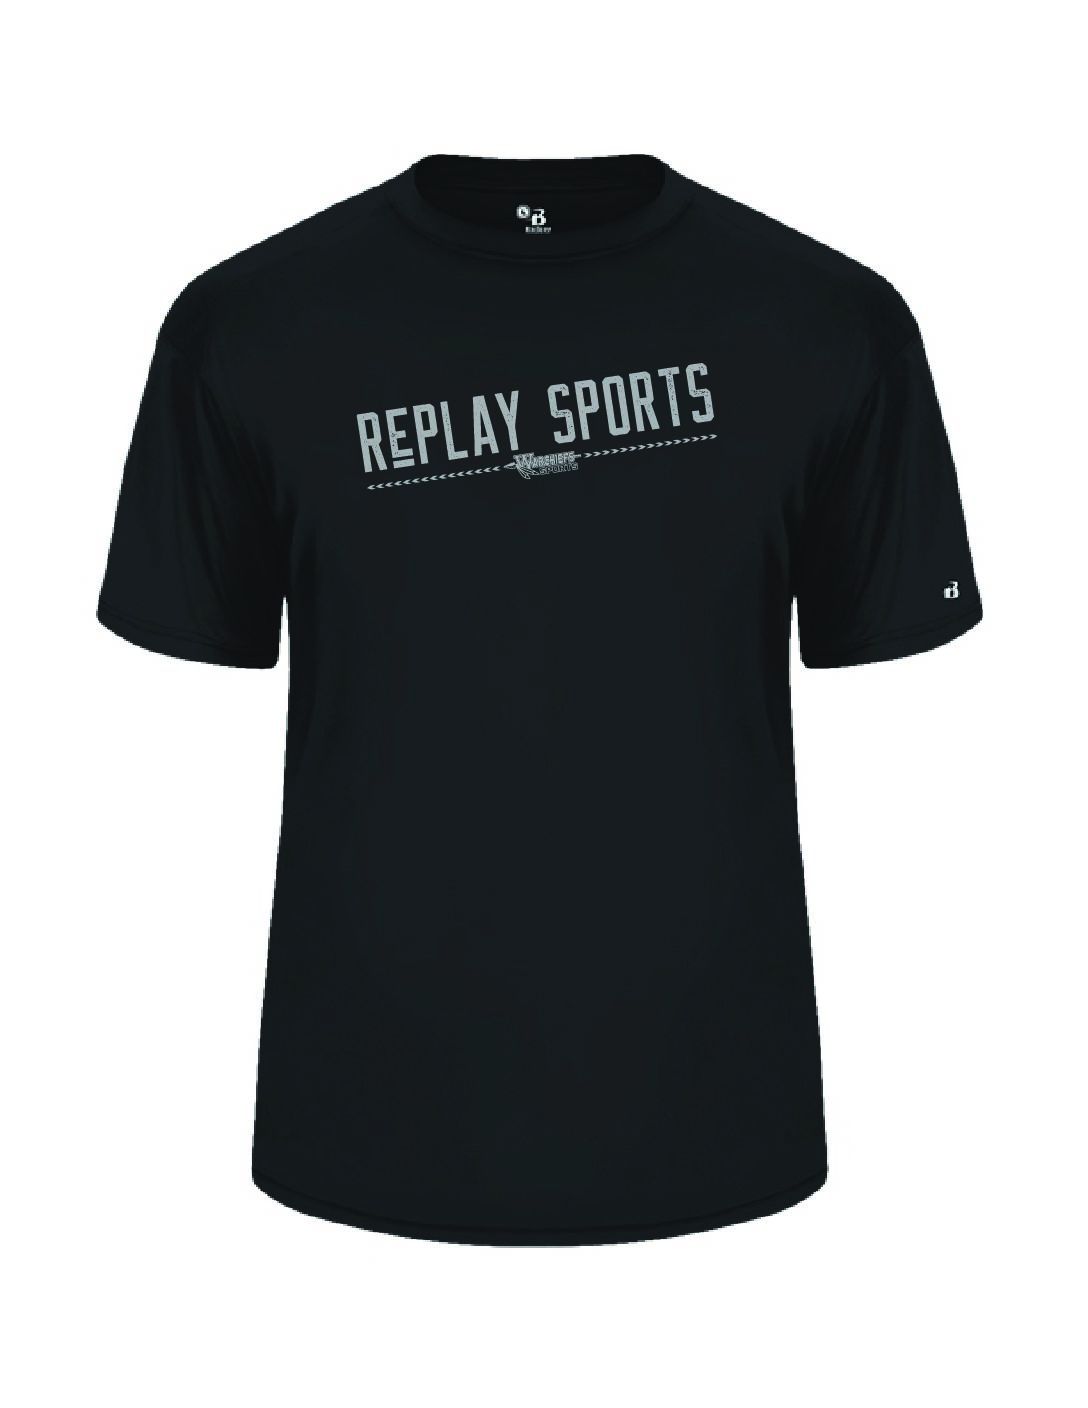 Replay Sports Dri Fit Shirt - Warchiefs Sports